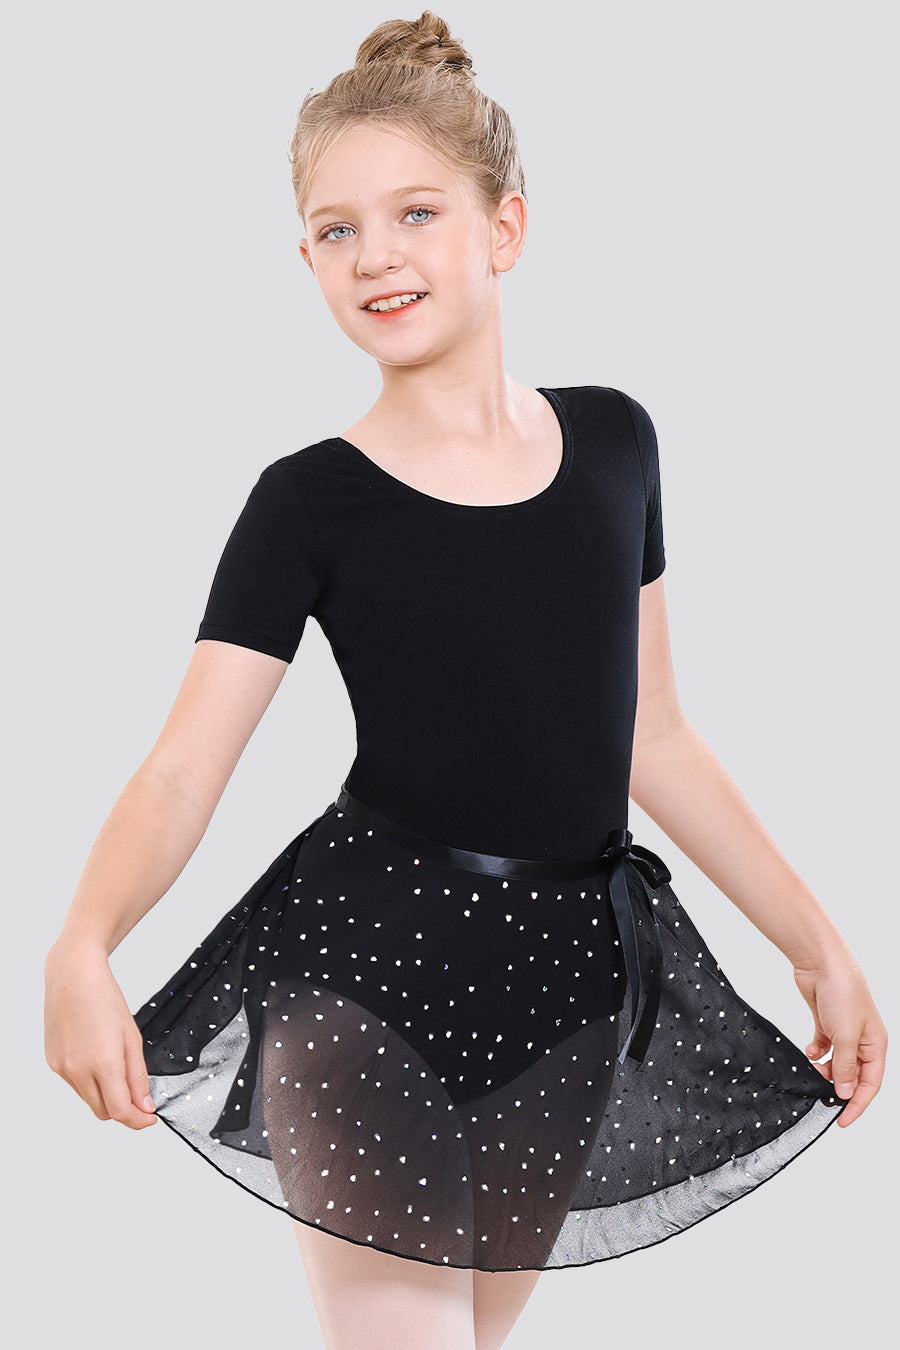 Girls Ballet Leotard Ballerina Starter Kit | Stelle | Athletic & Dance ...